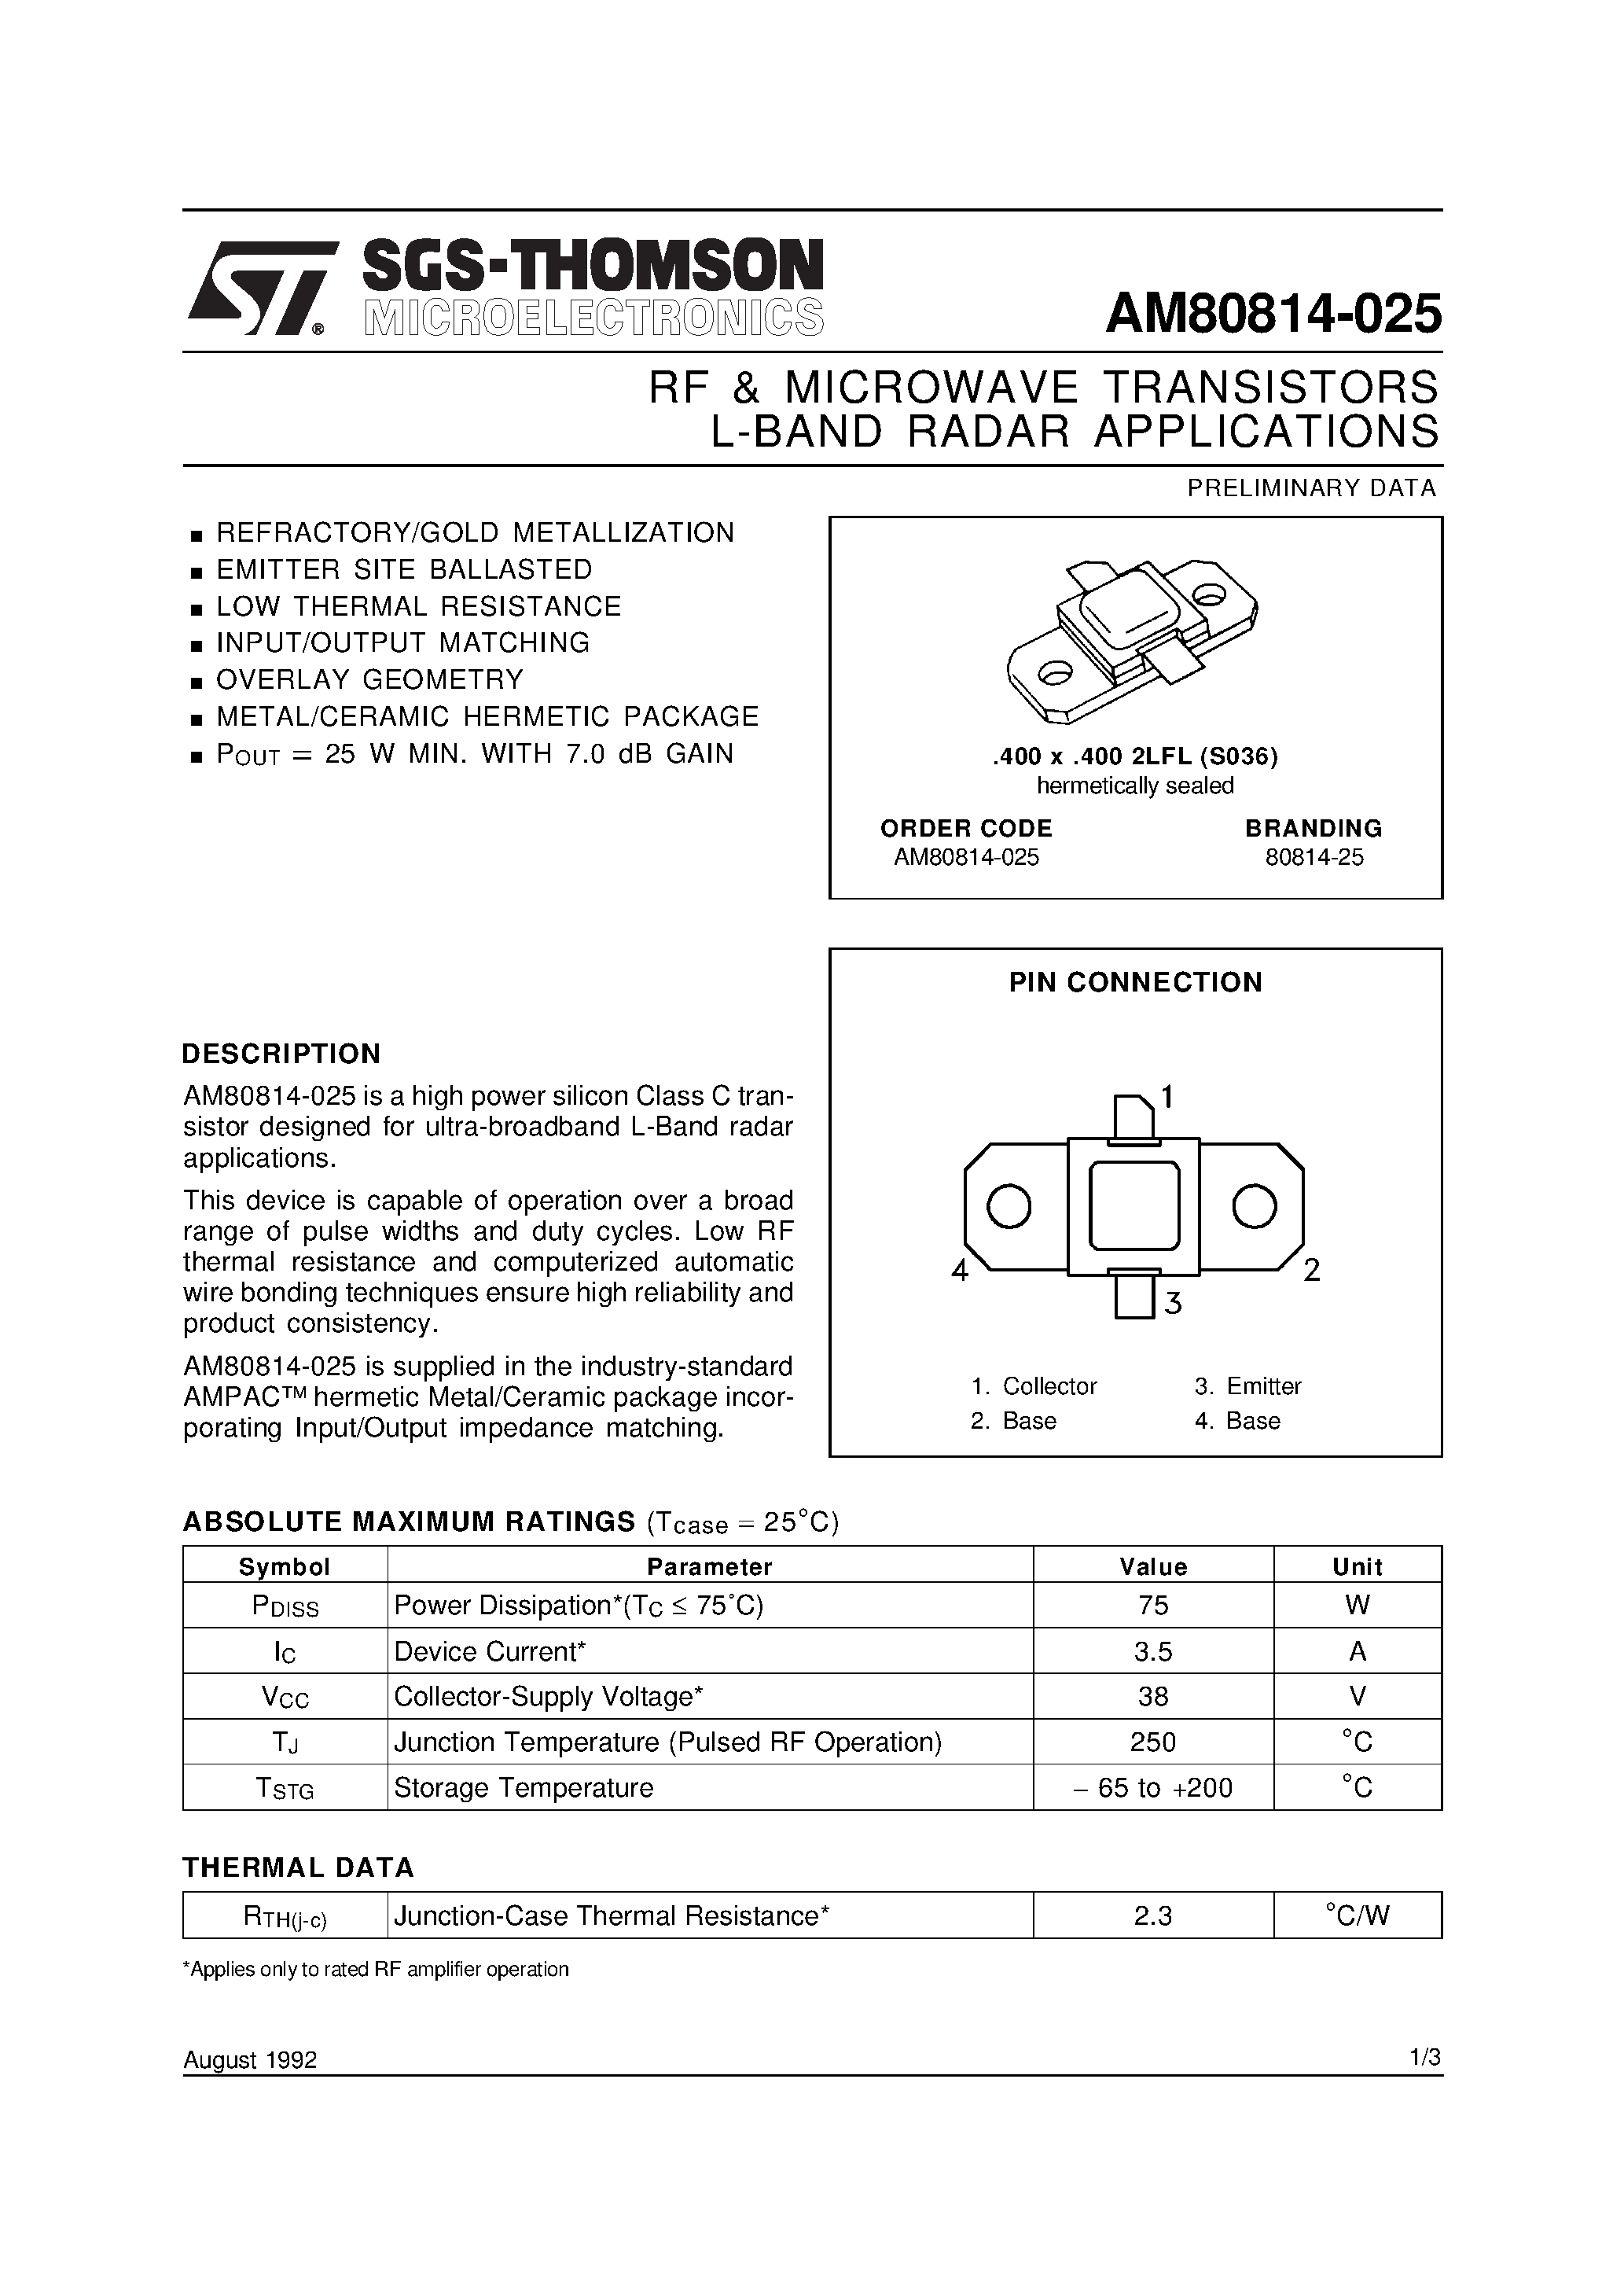 Даташит AM80814-025 - L-BAND RADAR APPLICATIONS RF & MICROWAVE TRANSISTORS страница 1